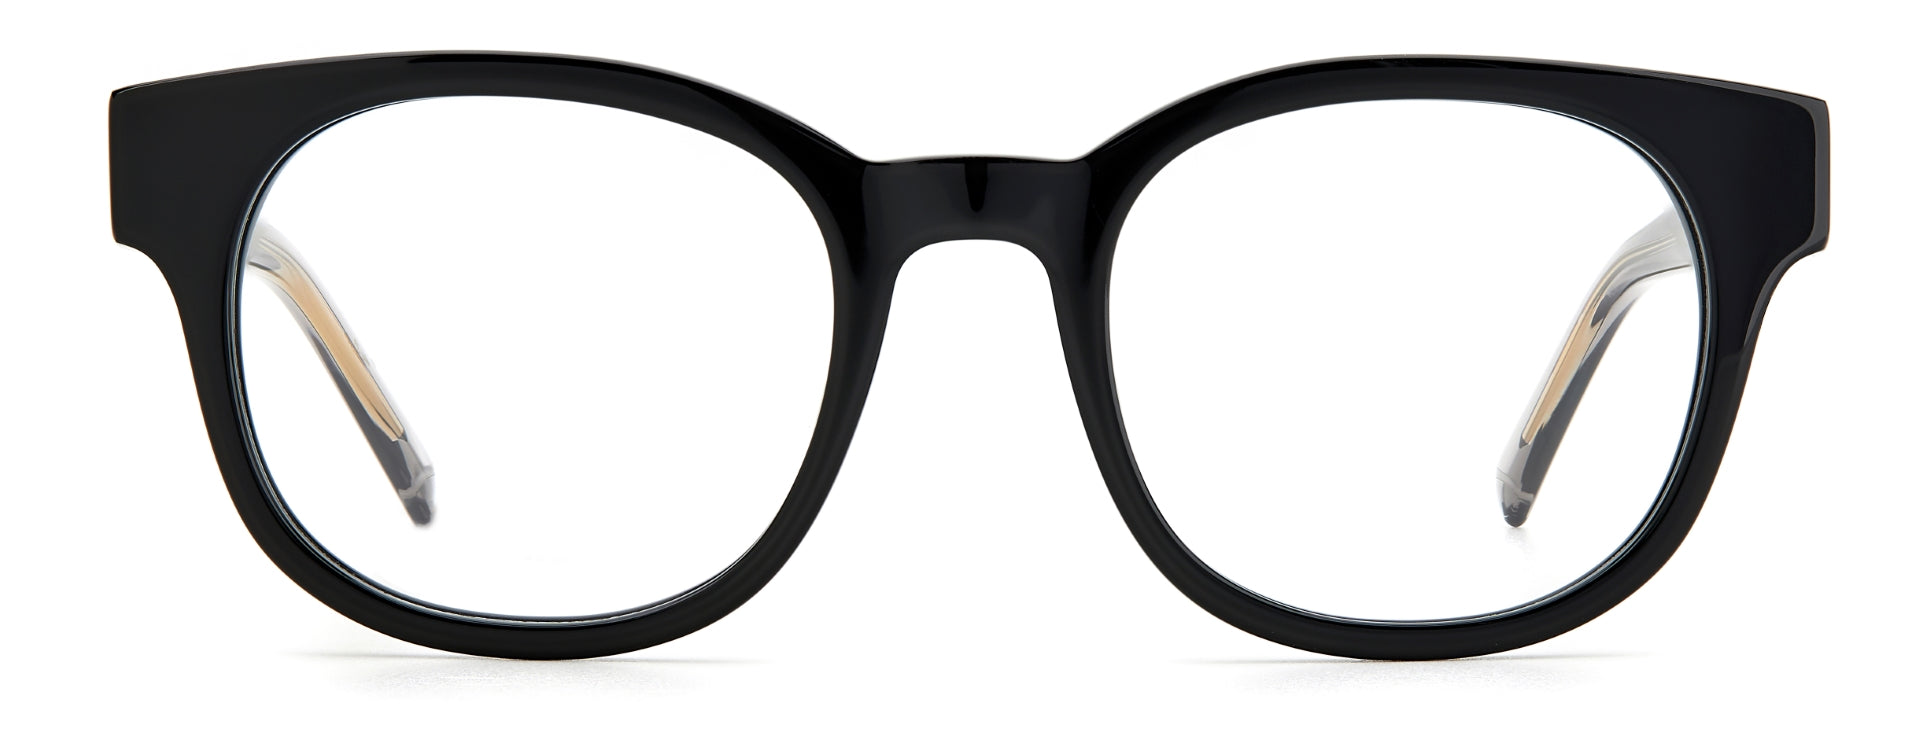 M MISSONI UNISEX ADULT SQUARE Eyeglasses-MMI 0099 Size 48